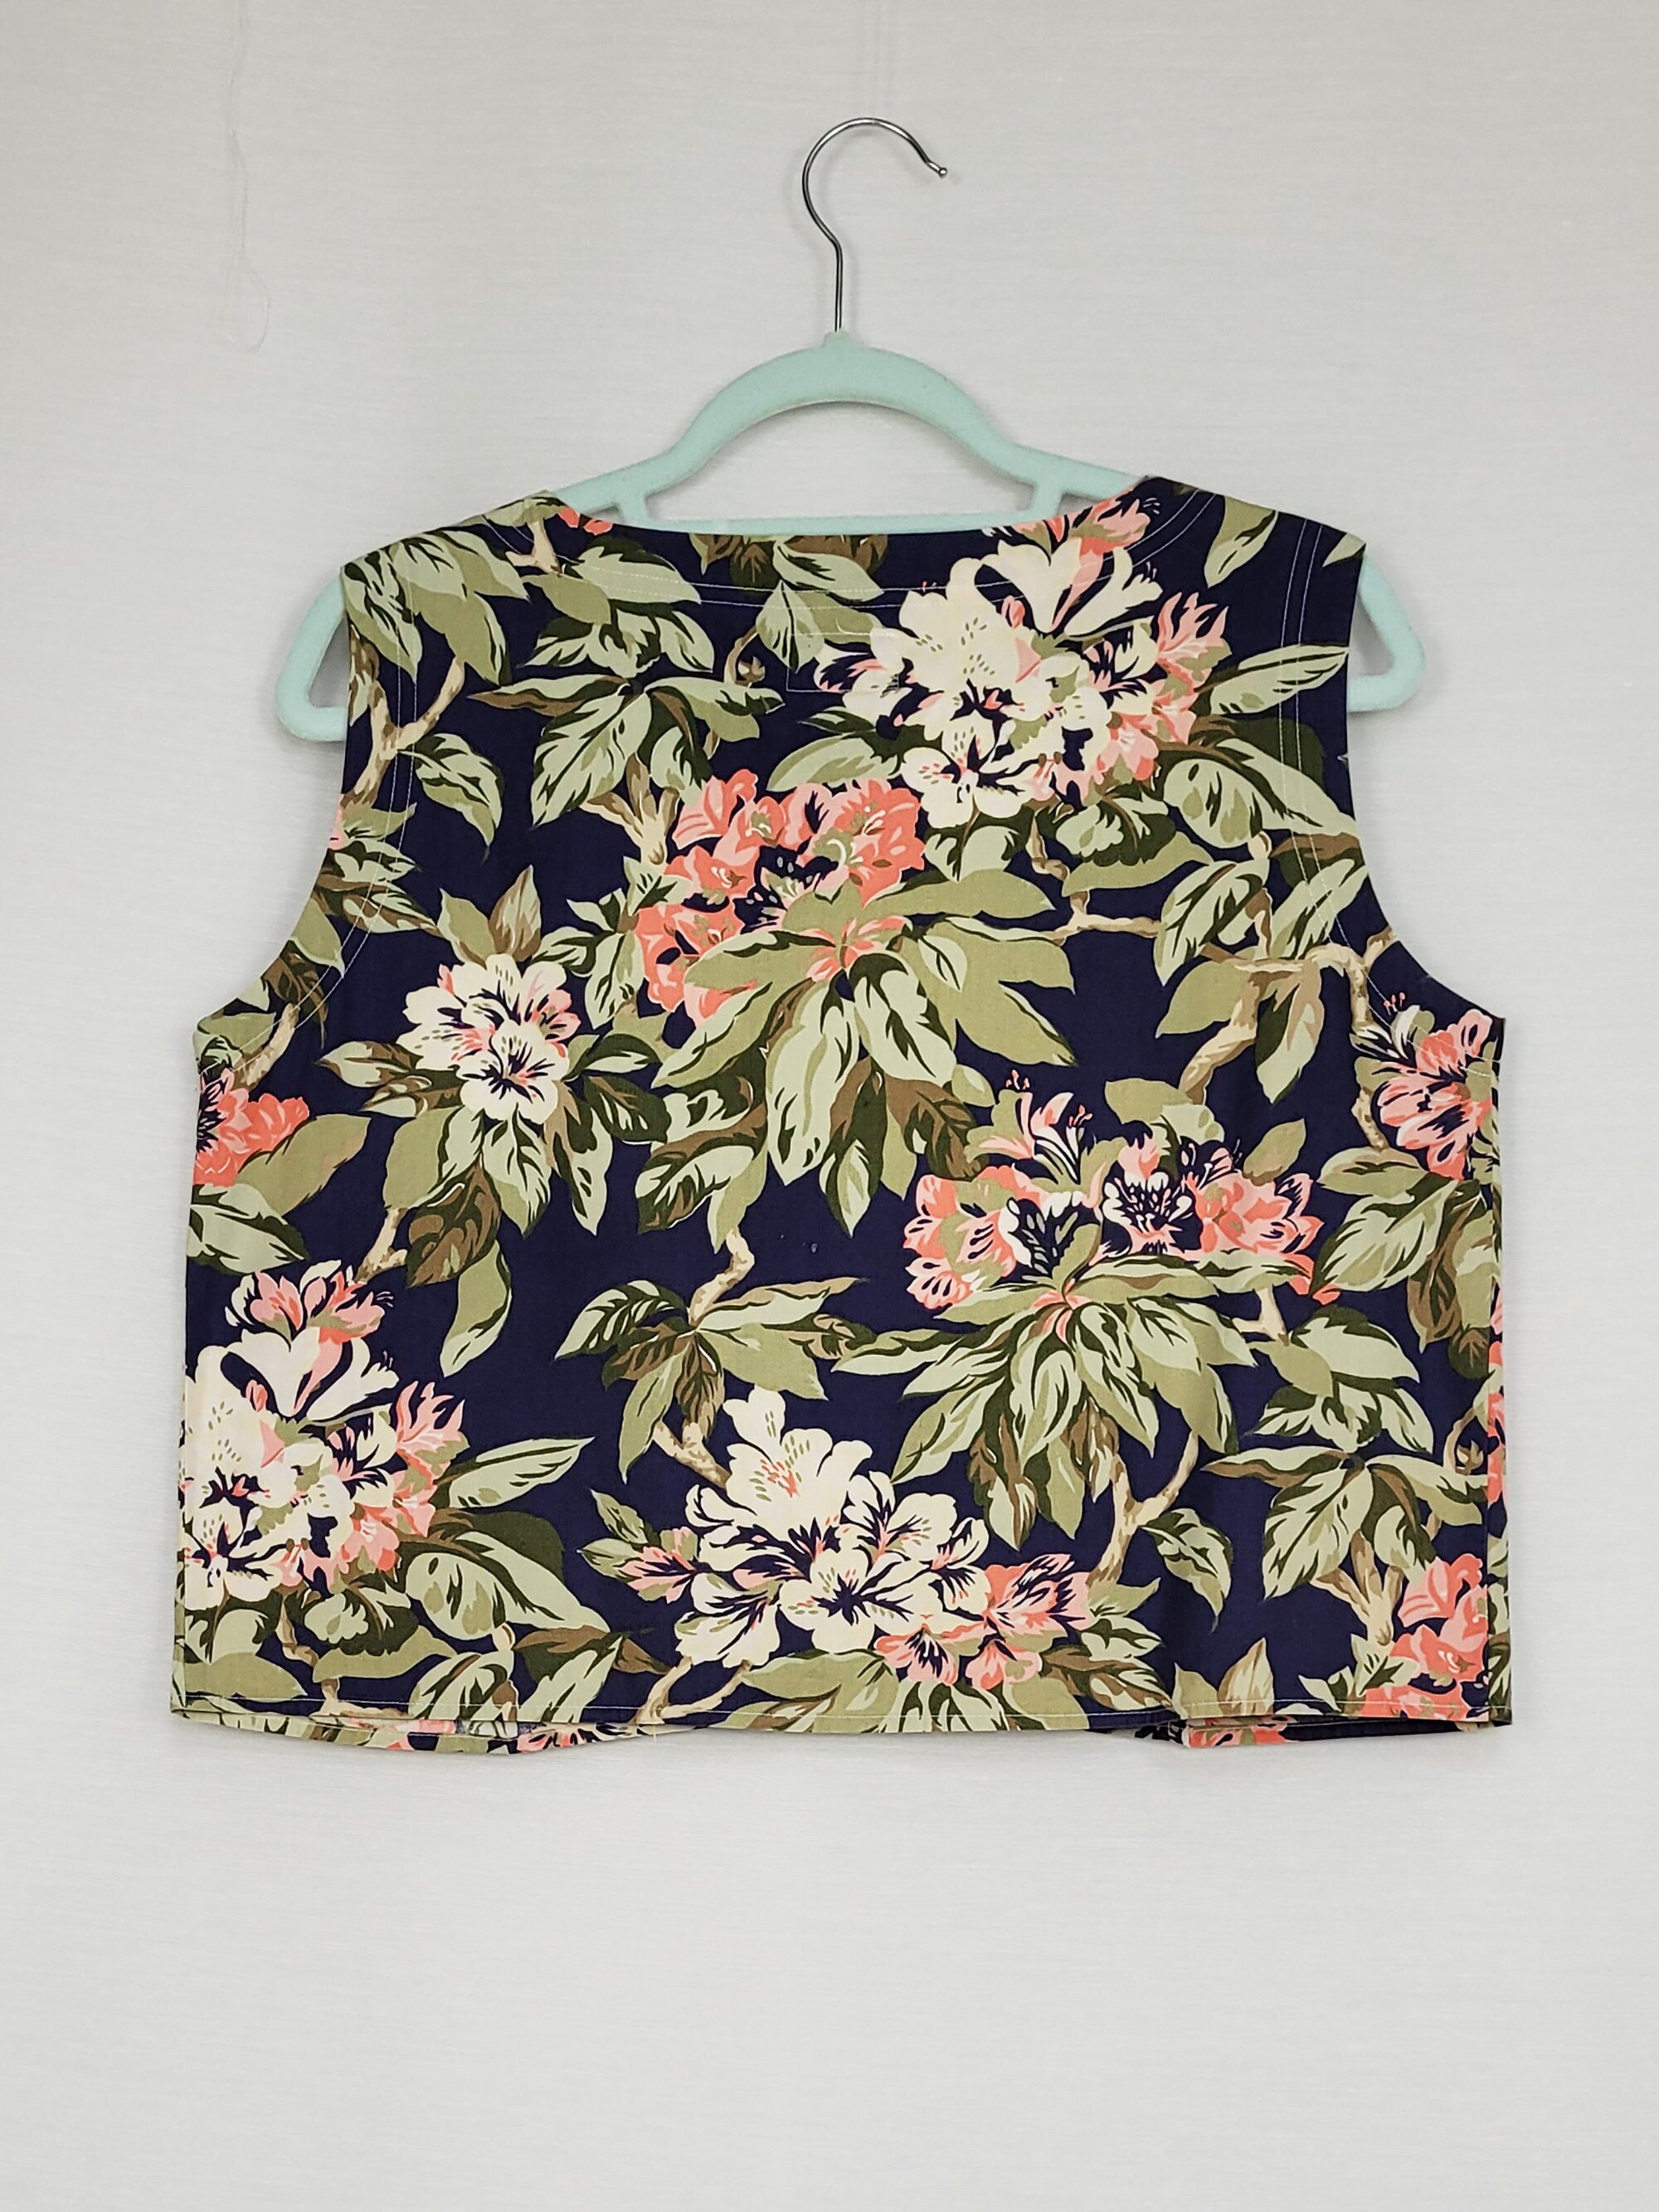 Vintage 90s GAP Flower print minimalist buttons down top blouse